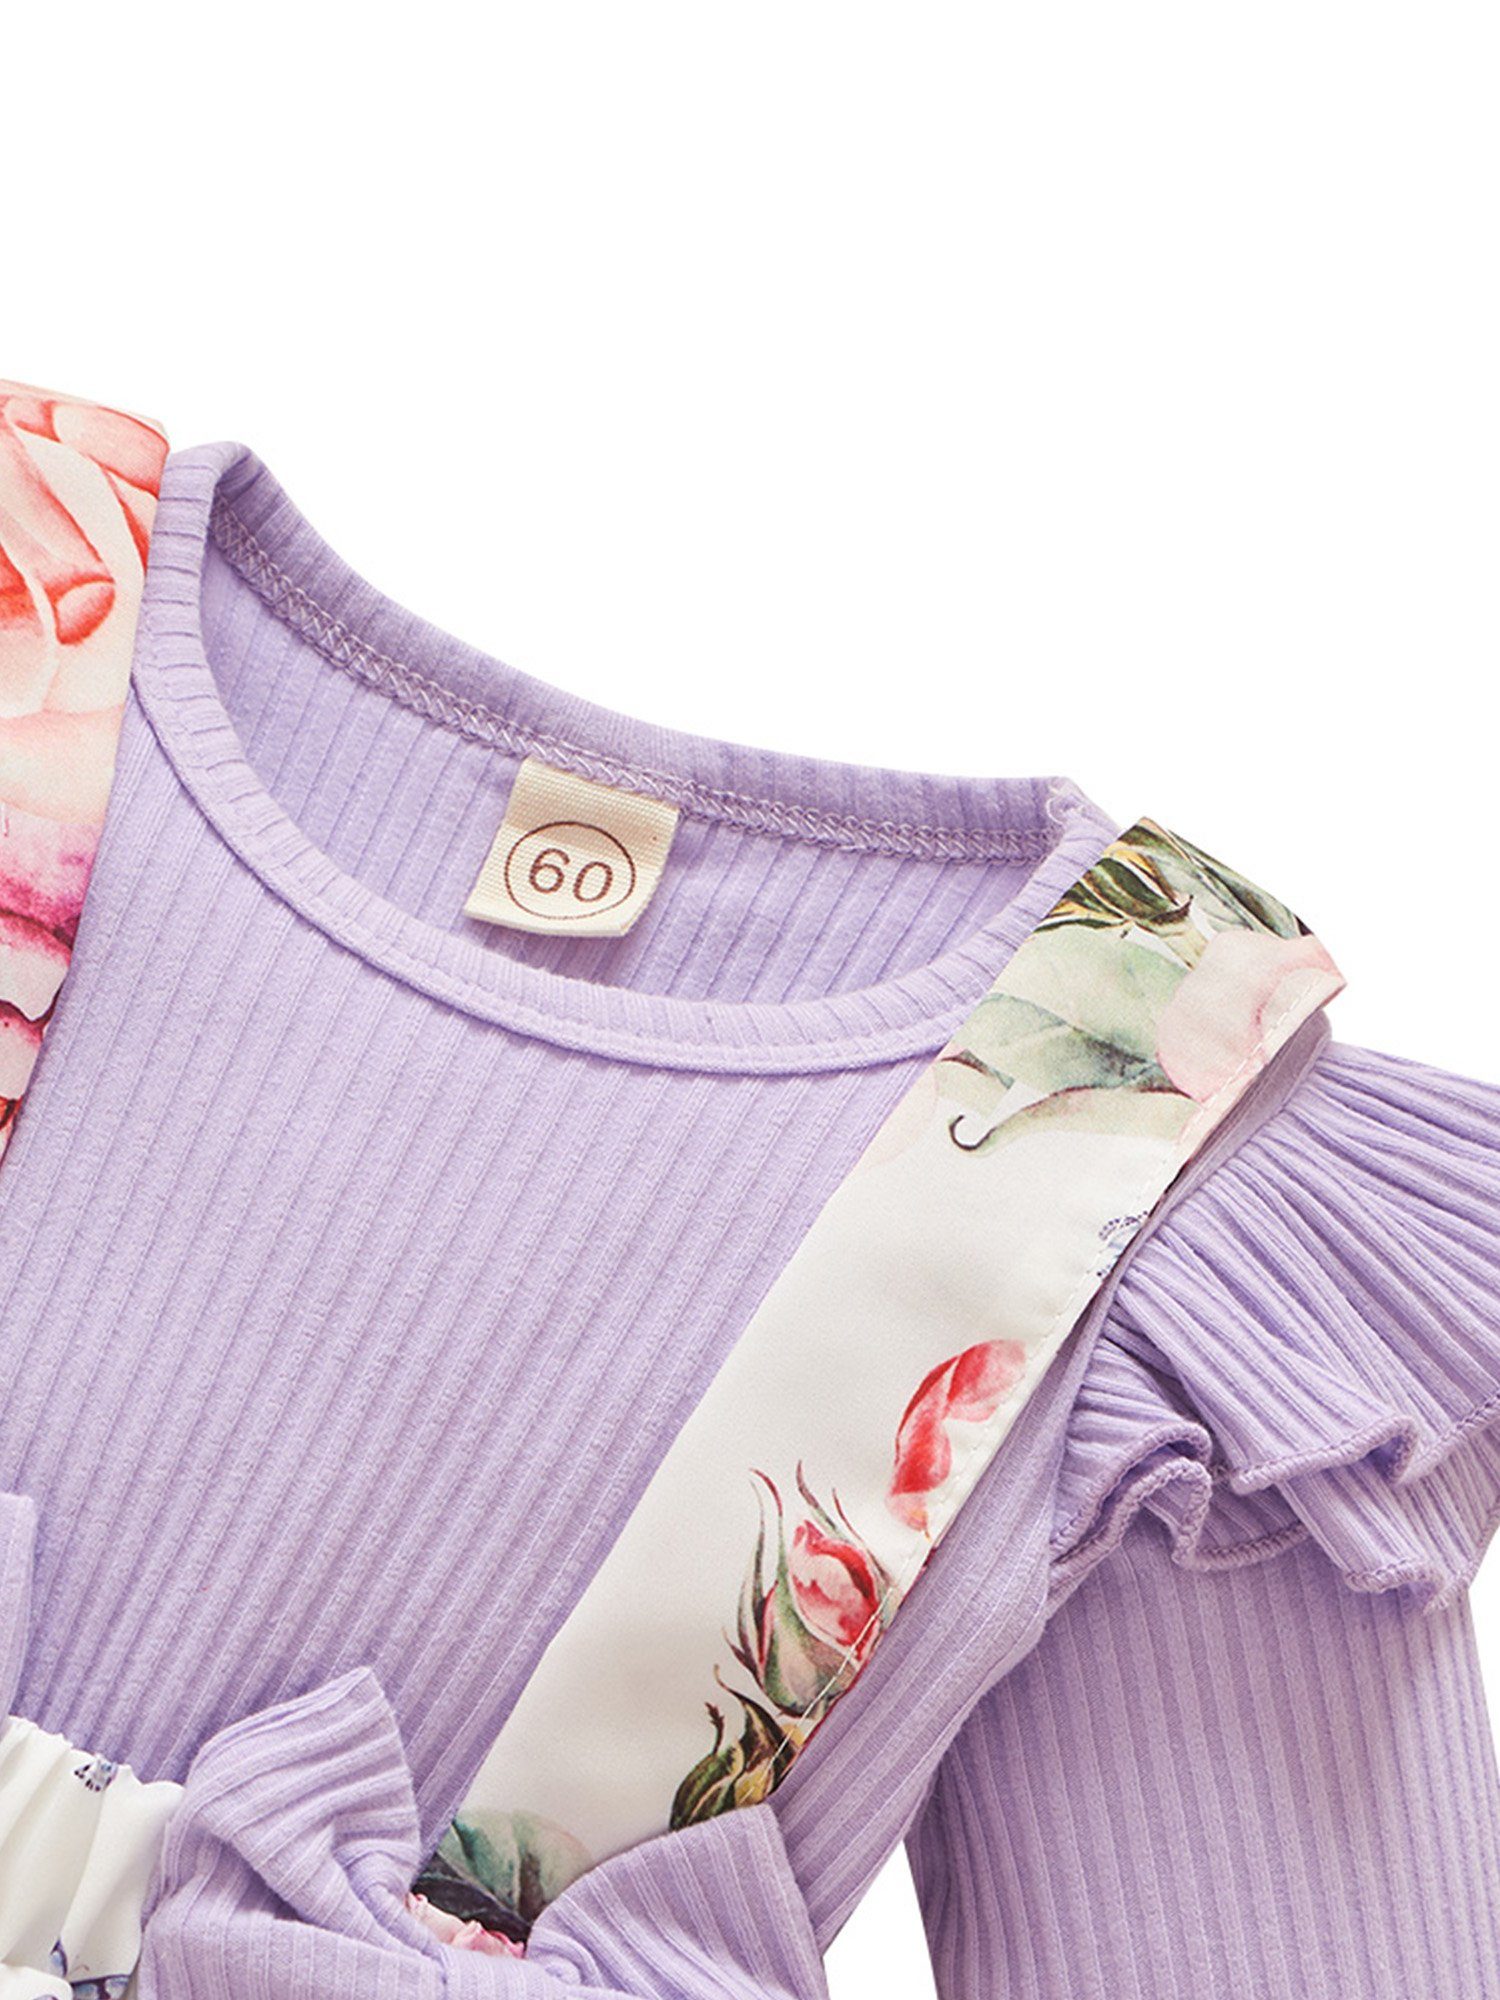 Kinder Mädchen (Gr. 50 - 92) LAPA Shirt, Leggings & Haarband Strampler mit Blumenmuster für Neugeborene, Krabbelanzug